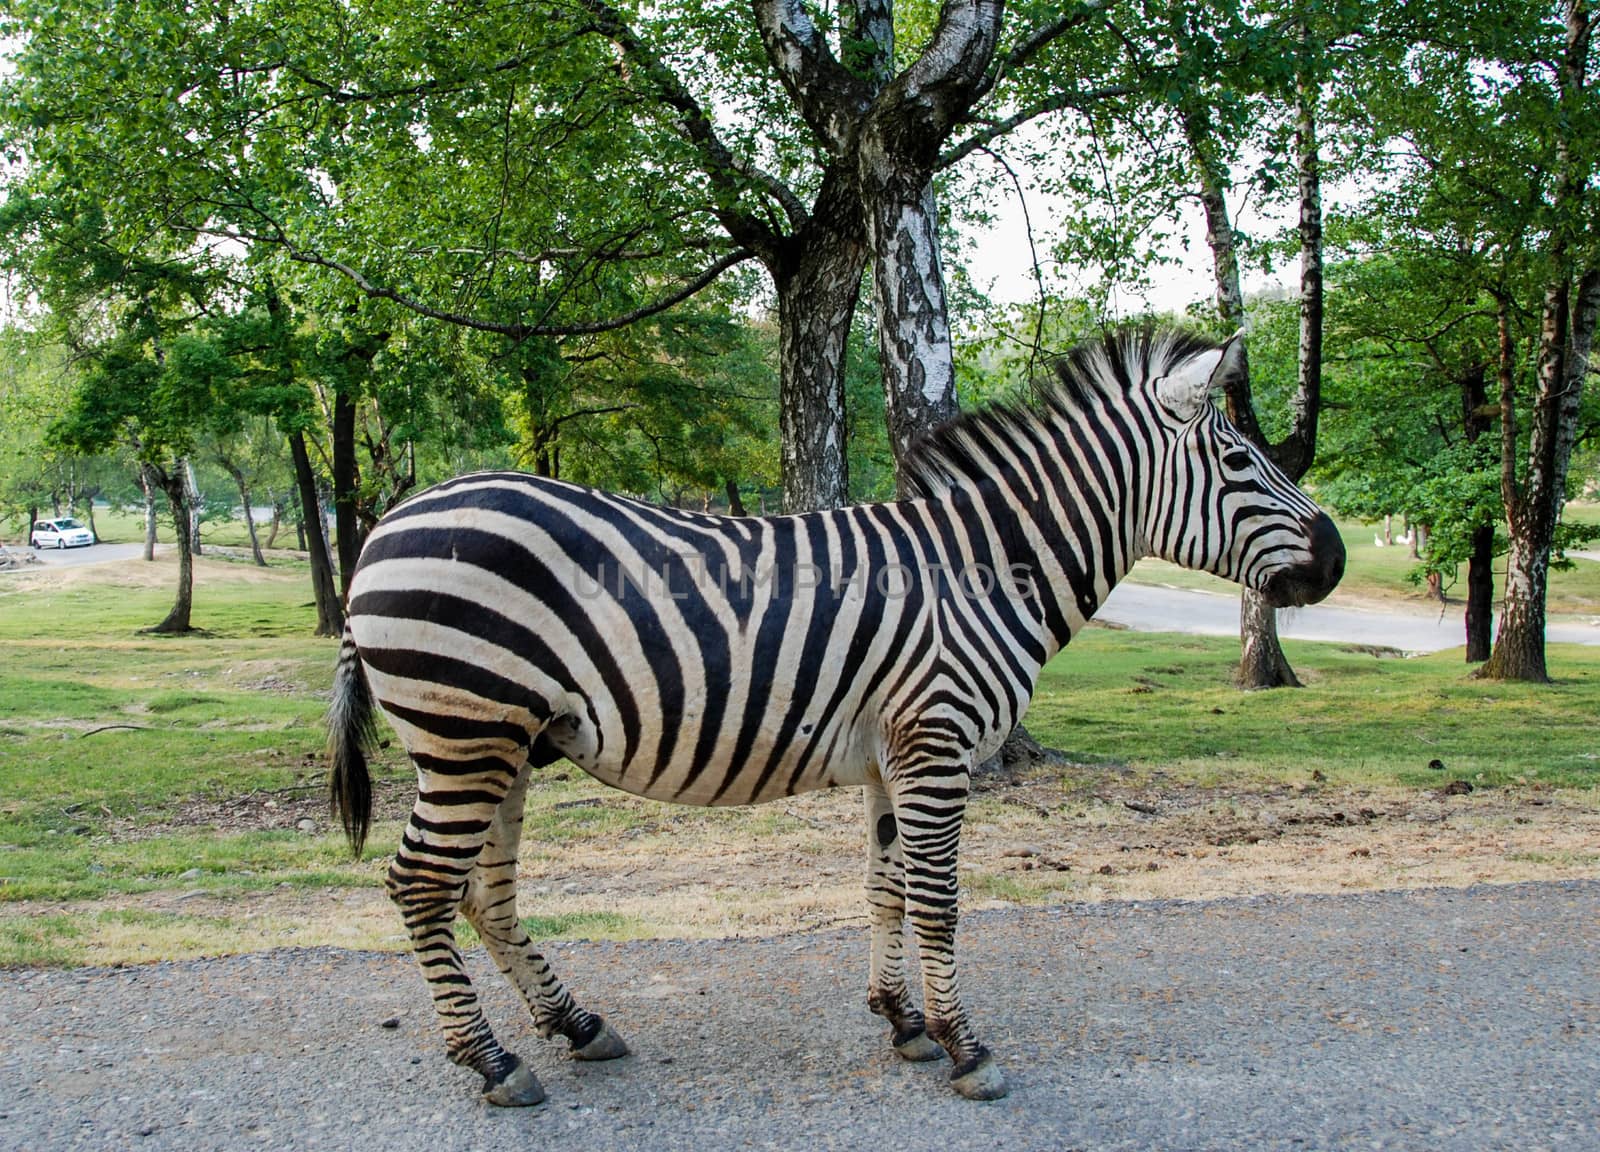 A zebra in a park. Full picture